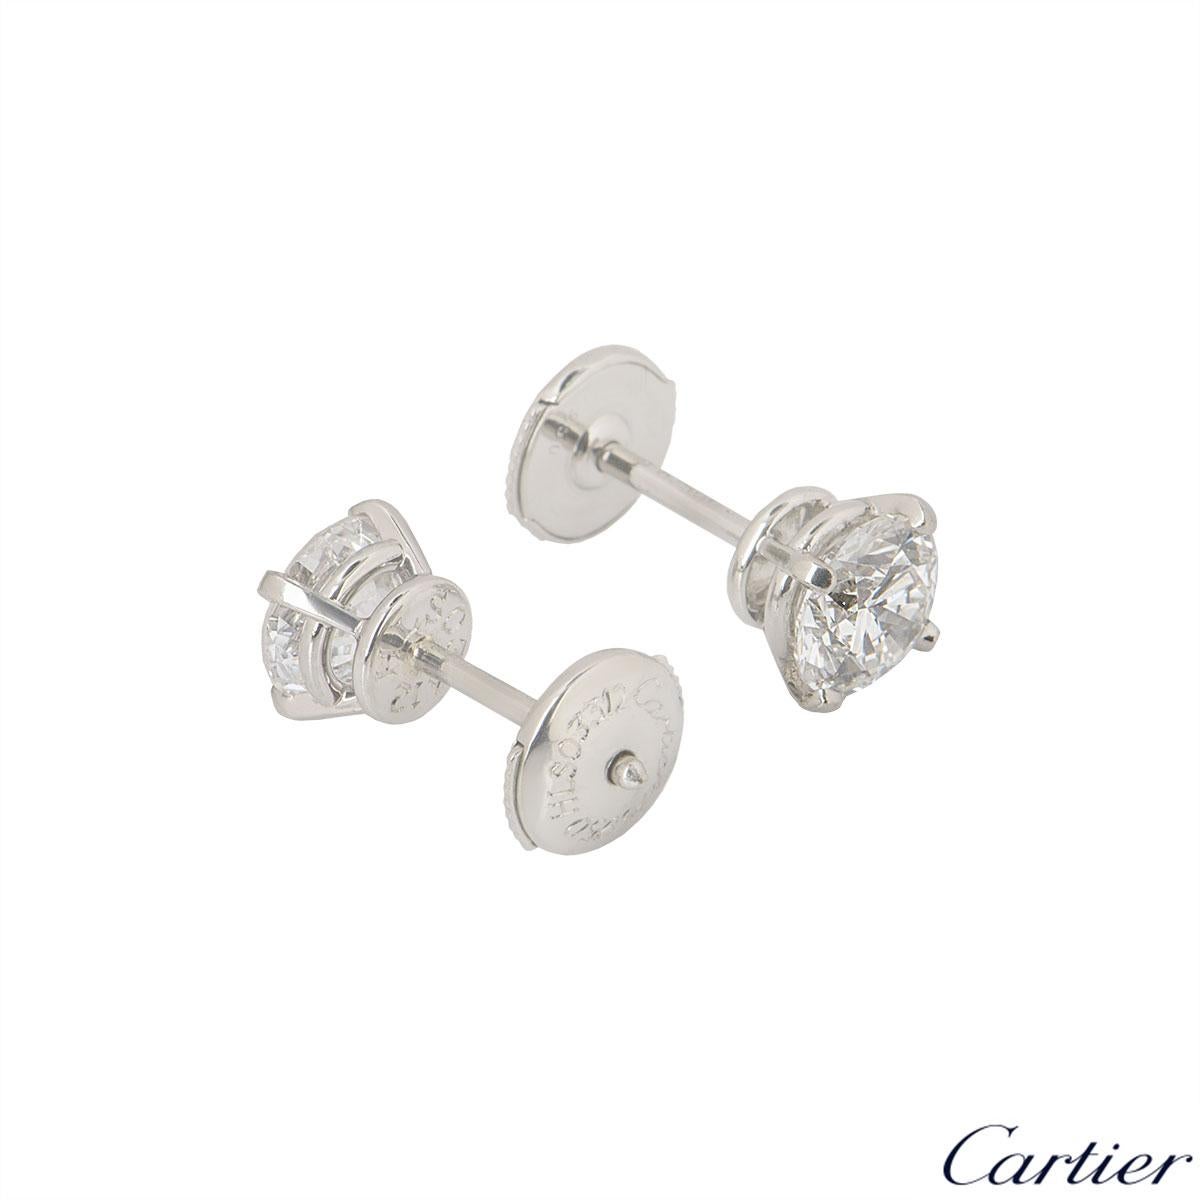 cartier 1895 diamond earrings price